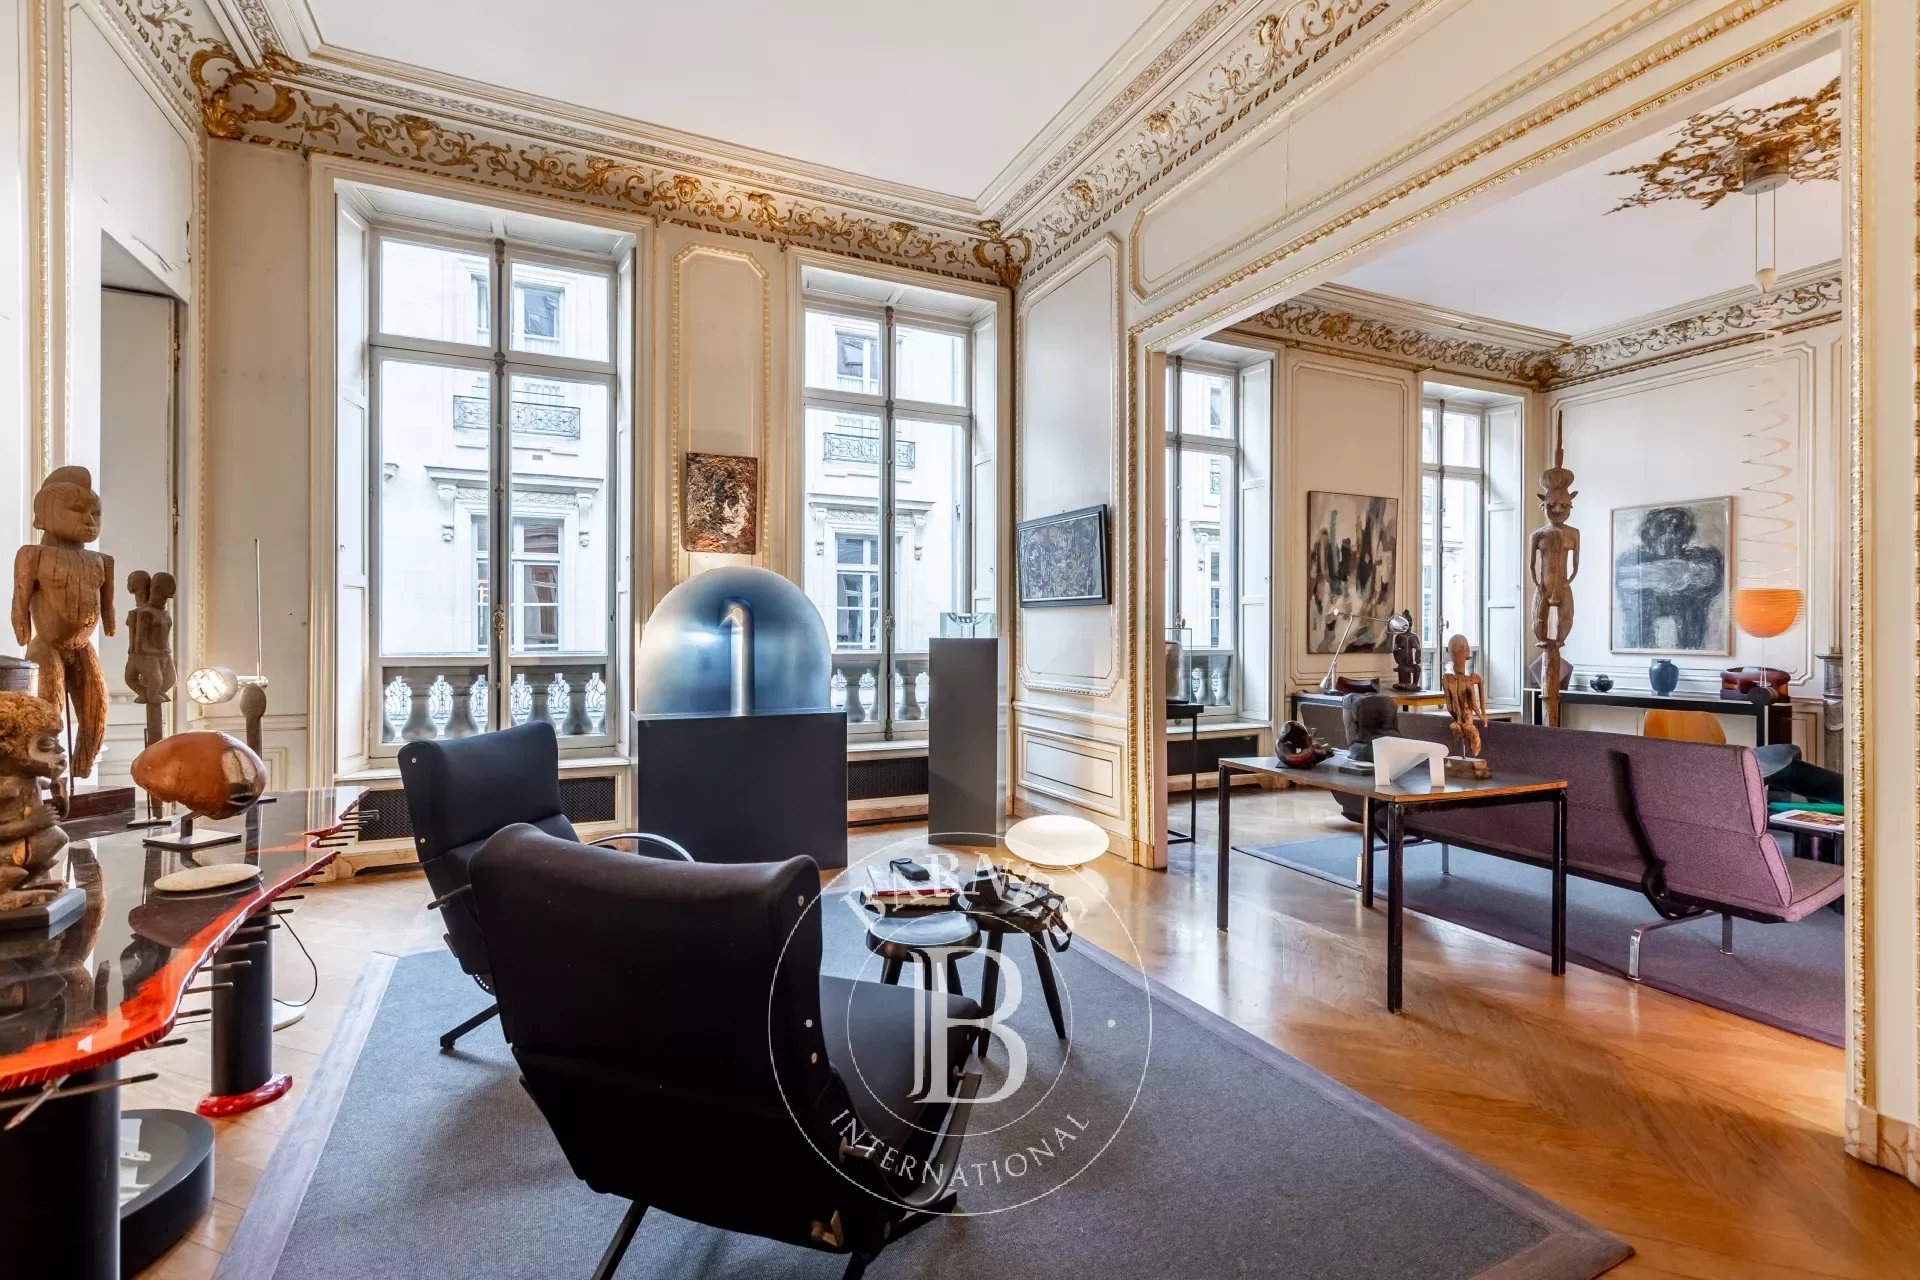 Exclusivité - Paris 1er - Concorde Place Vendôme - Appartement avec grande hauteur sous plafond - 4 chambres